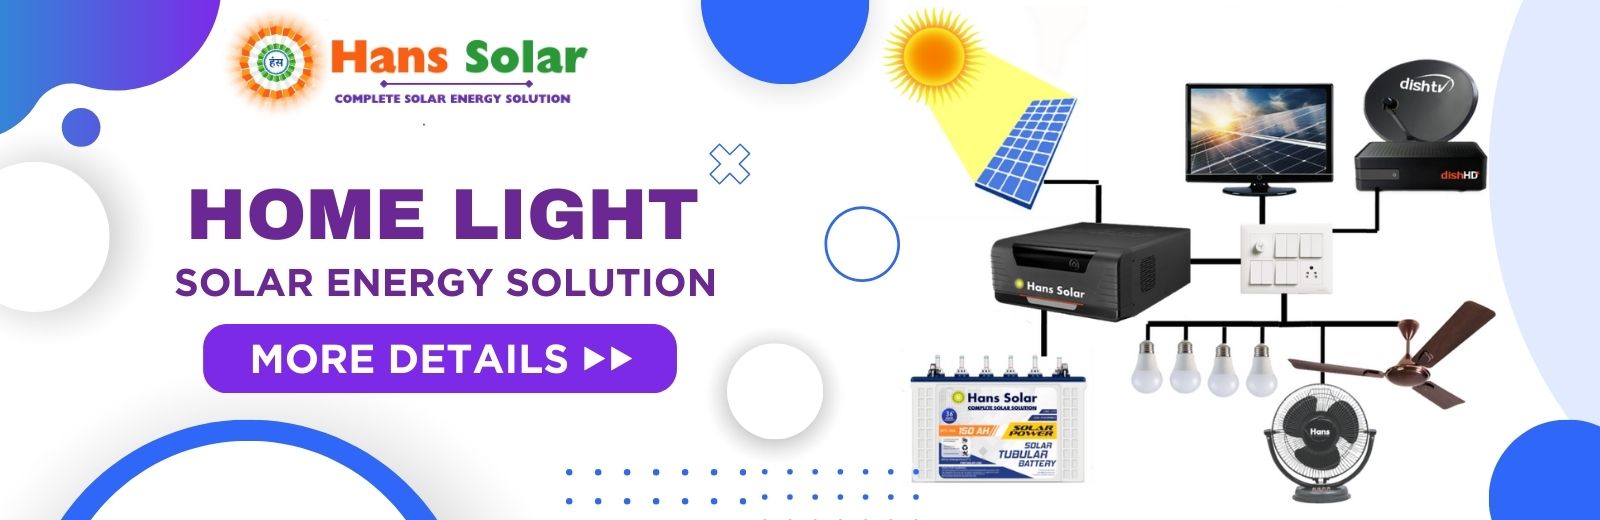 HOME LIGHT SOLAR ENERGY SOLUTION